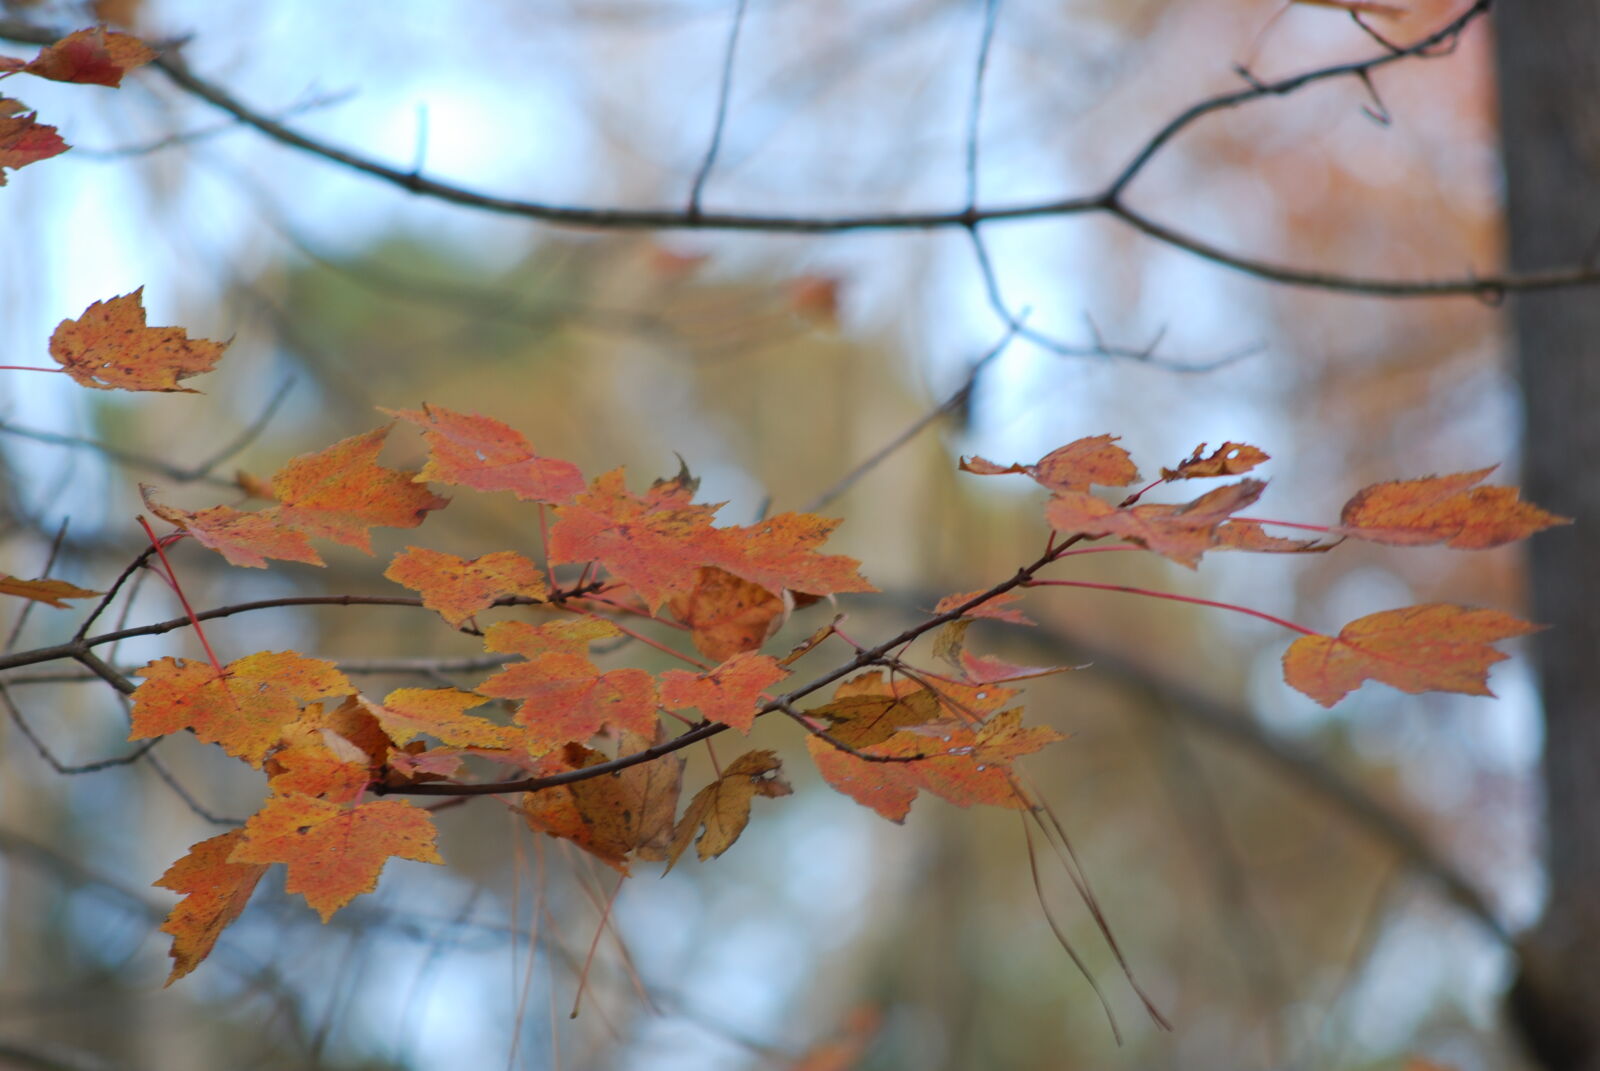 Nikon D80 sample photo. Autumn, leaves, fall, foliage photography